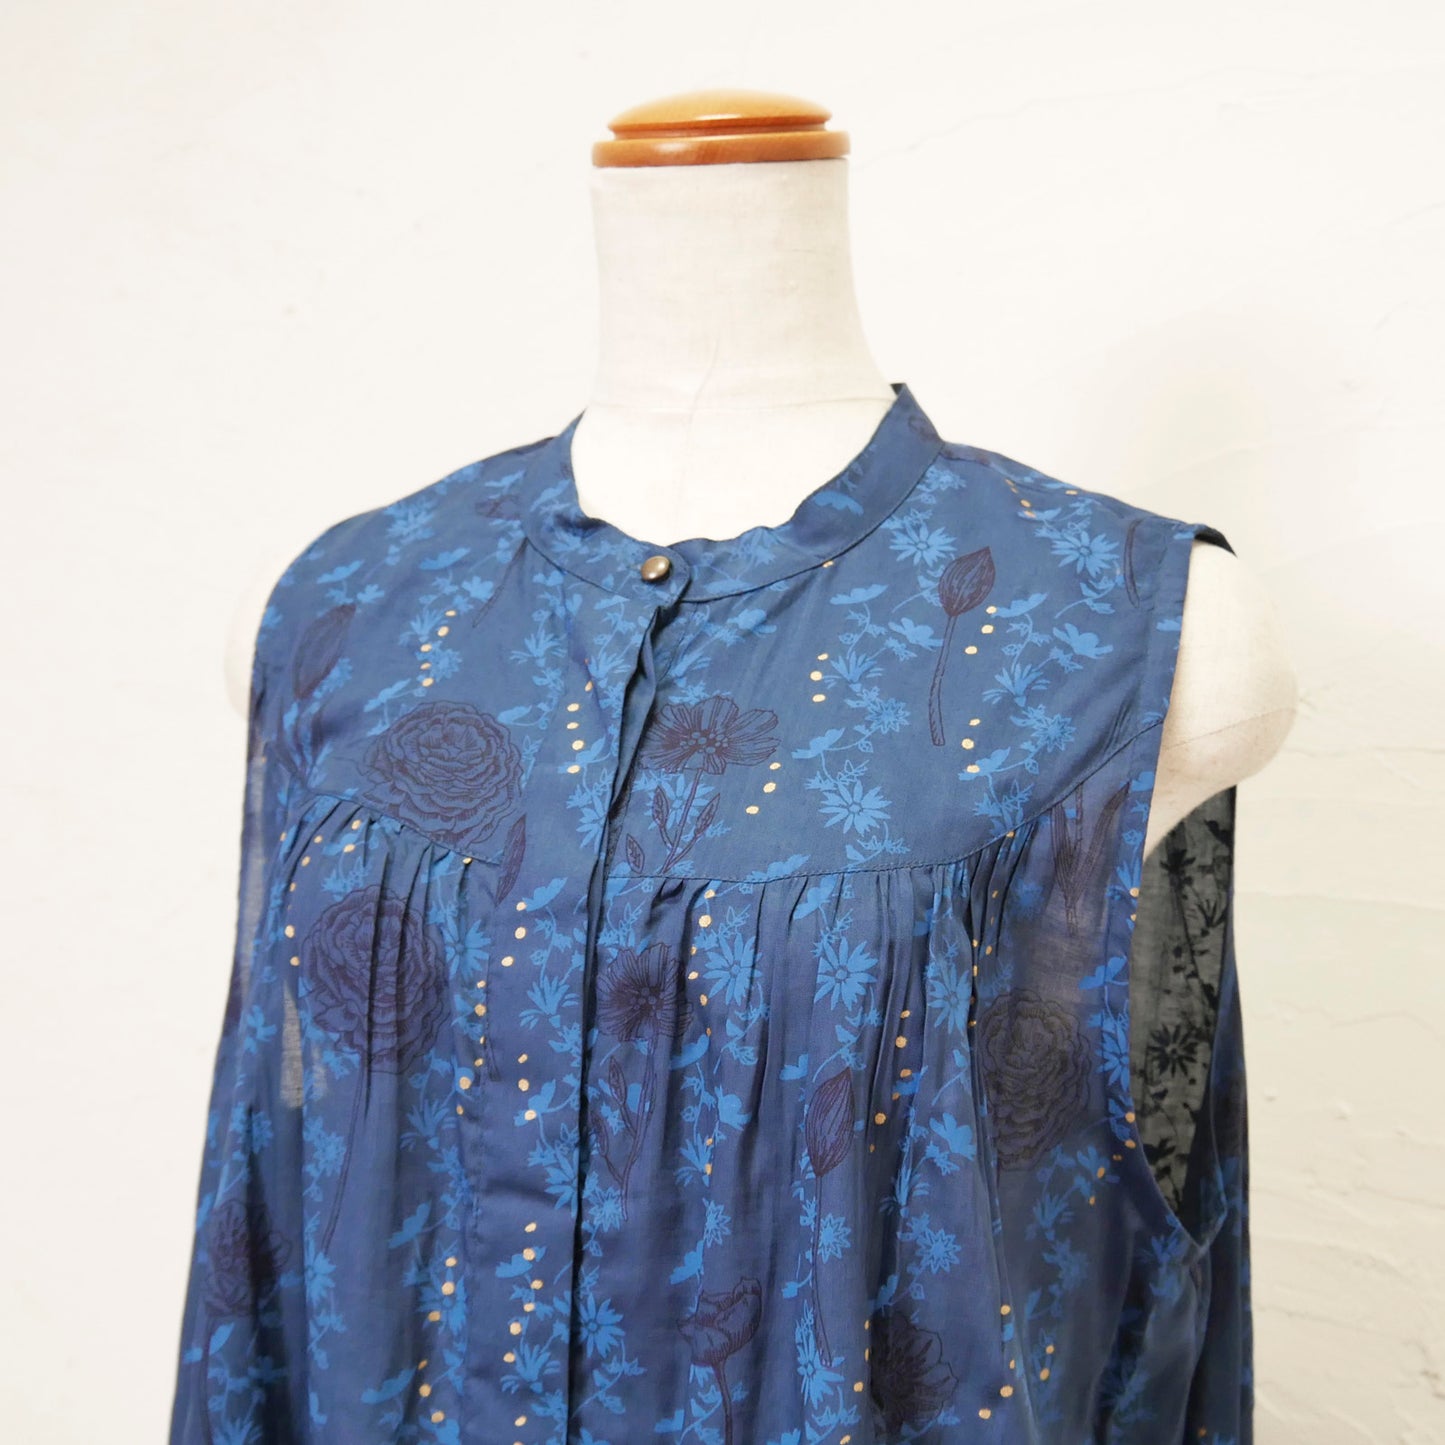 रेयॉन गोल्ड फ्लावर प्रिंट आस्तीन रहित शर्ट ड्रेस